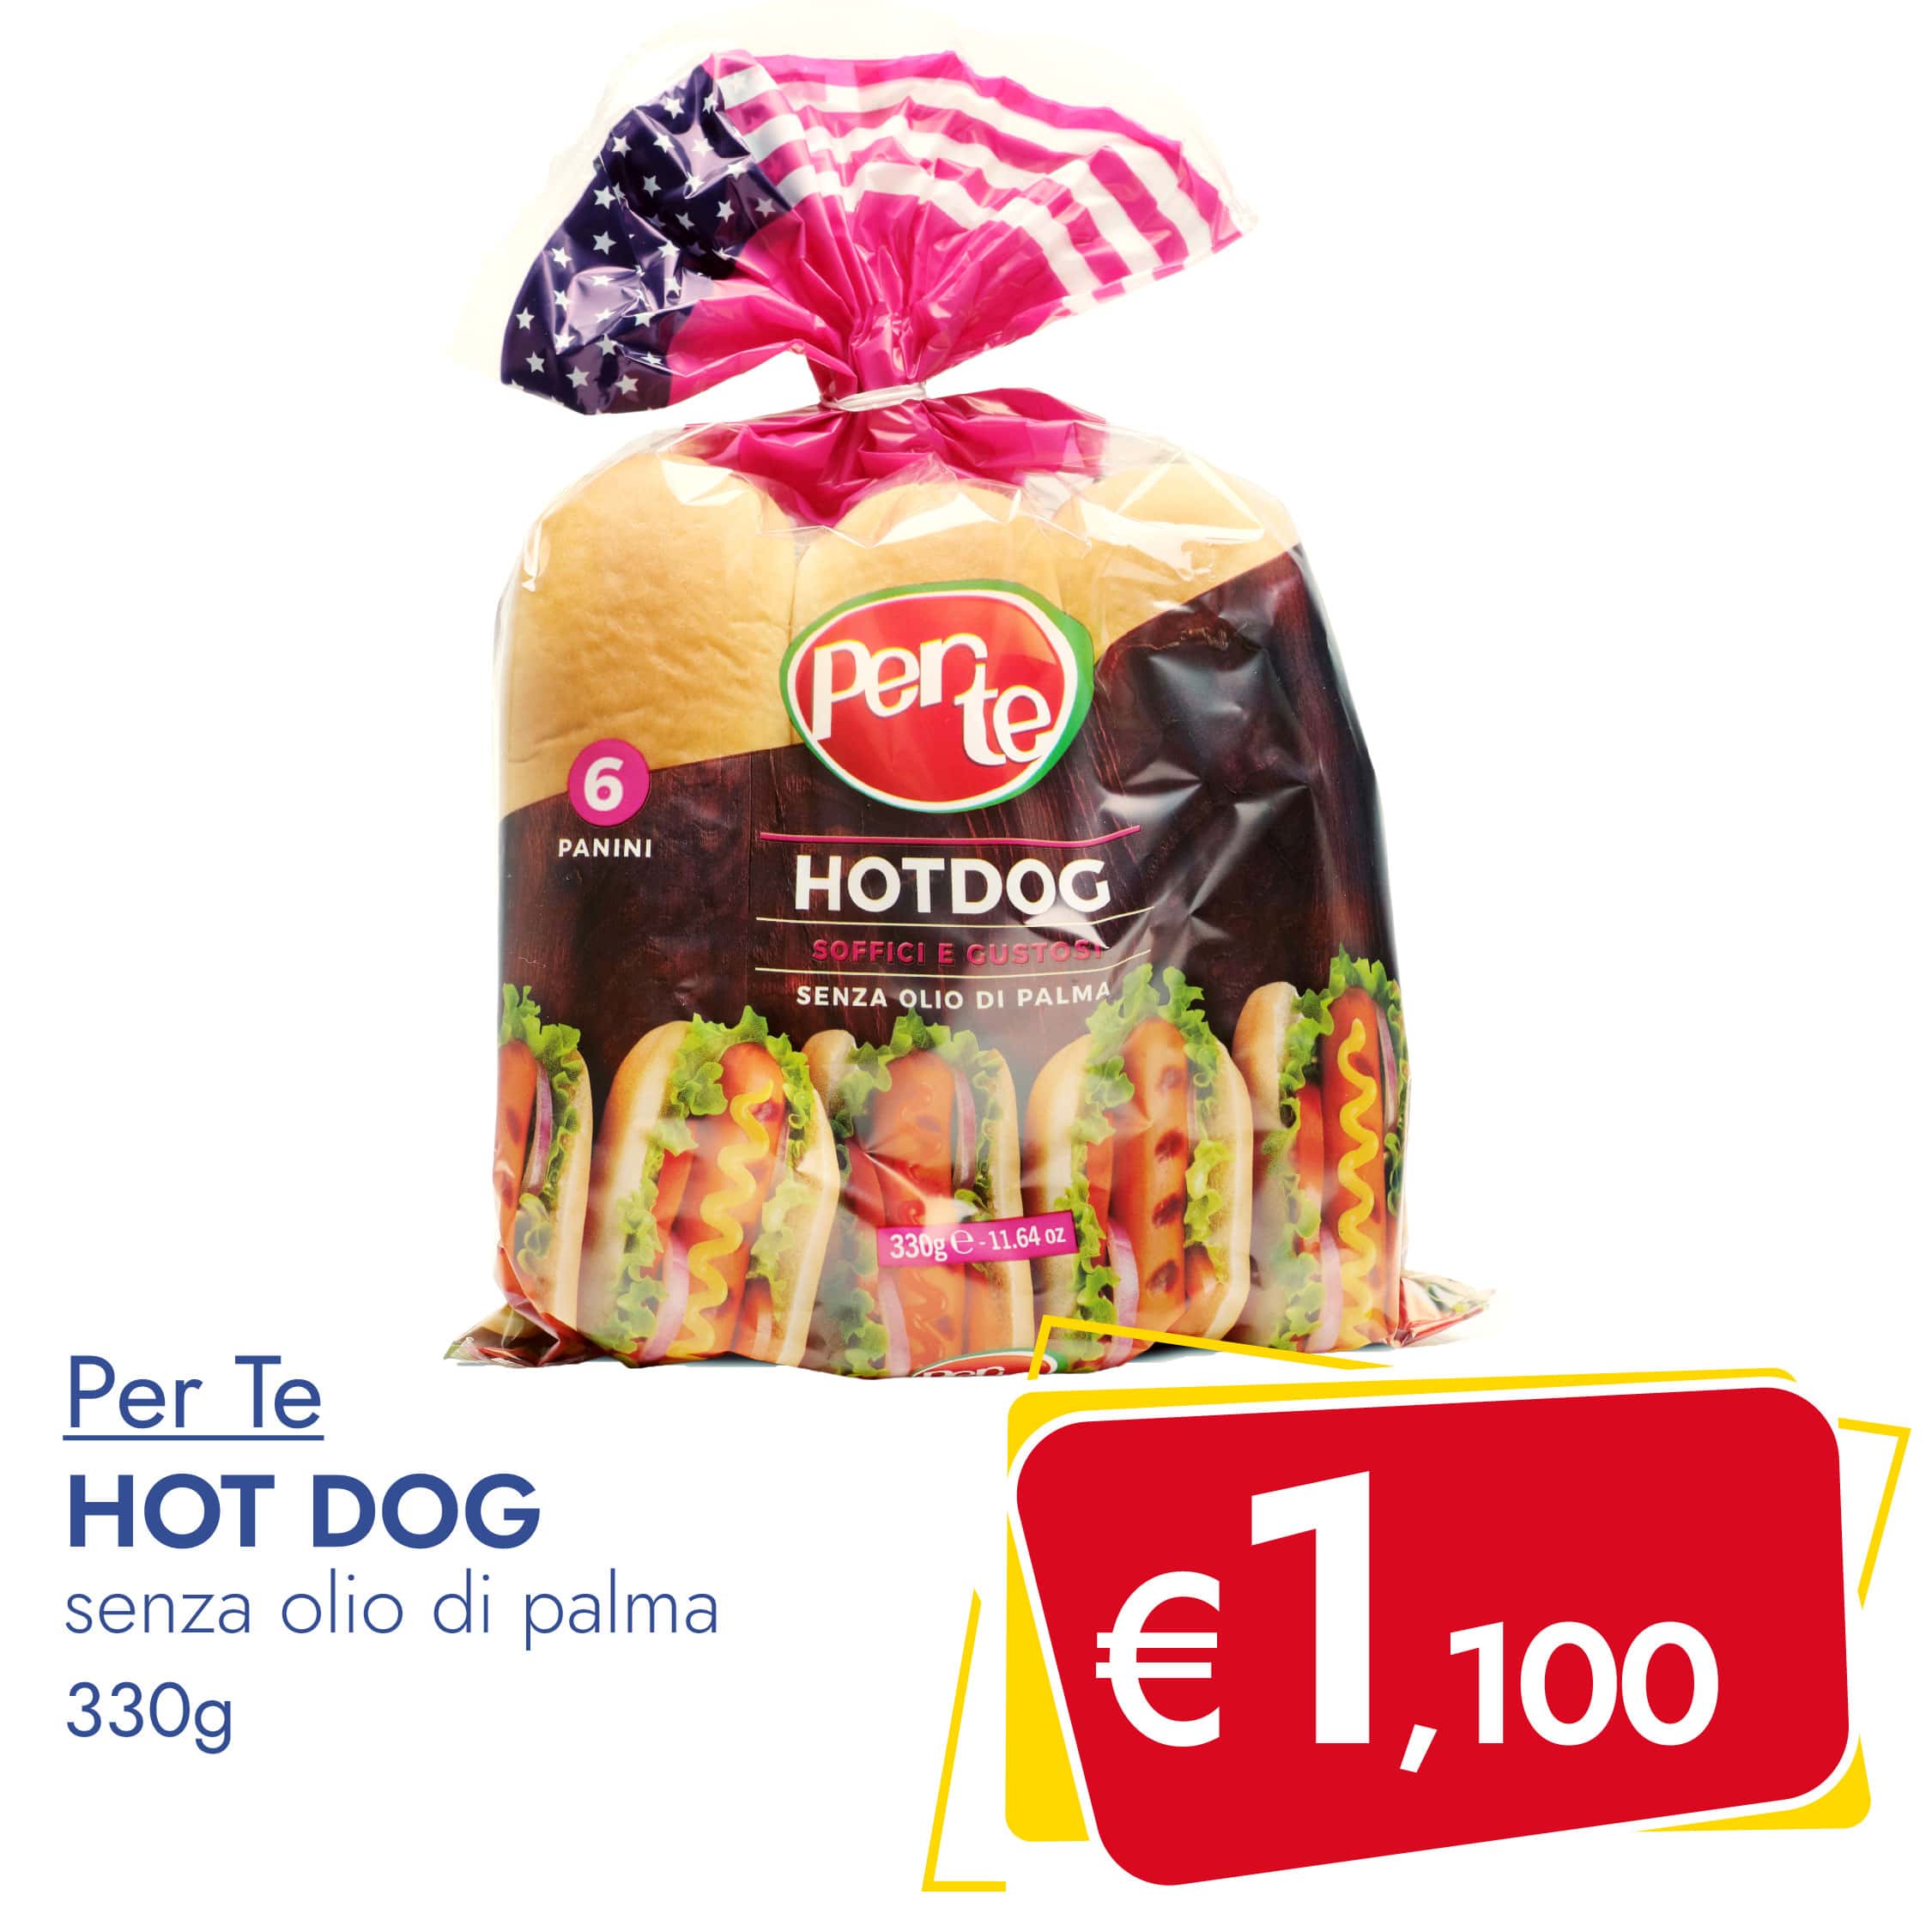 Hot Dog PER TE 330g in offerta esclusiva su Dialivery di Dia Srl dal 24 aprile al 29 aprile 2023